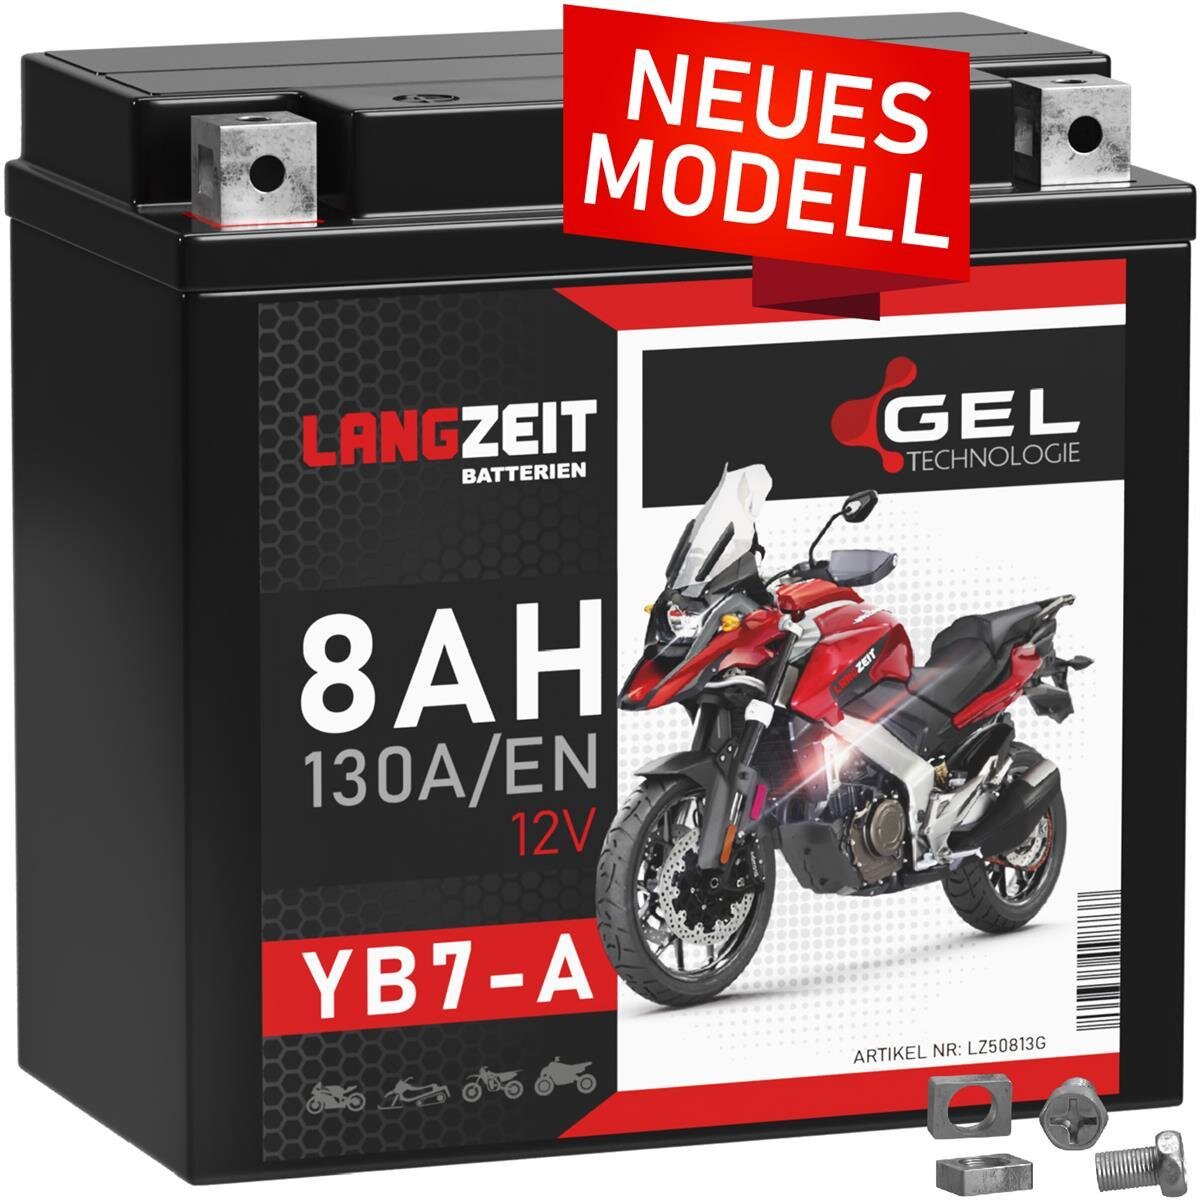 Langzeit Gel Motorradbatterie YB7-A 8Ah 12V, 33,90 €